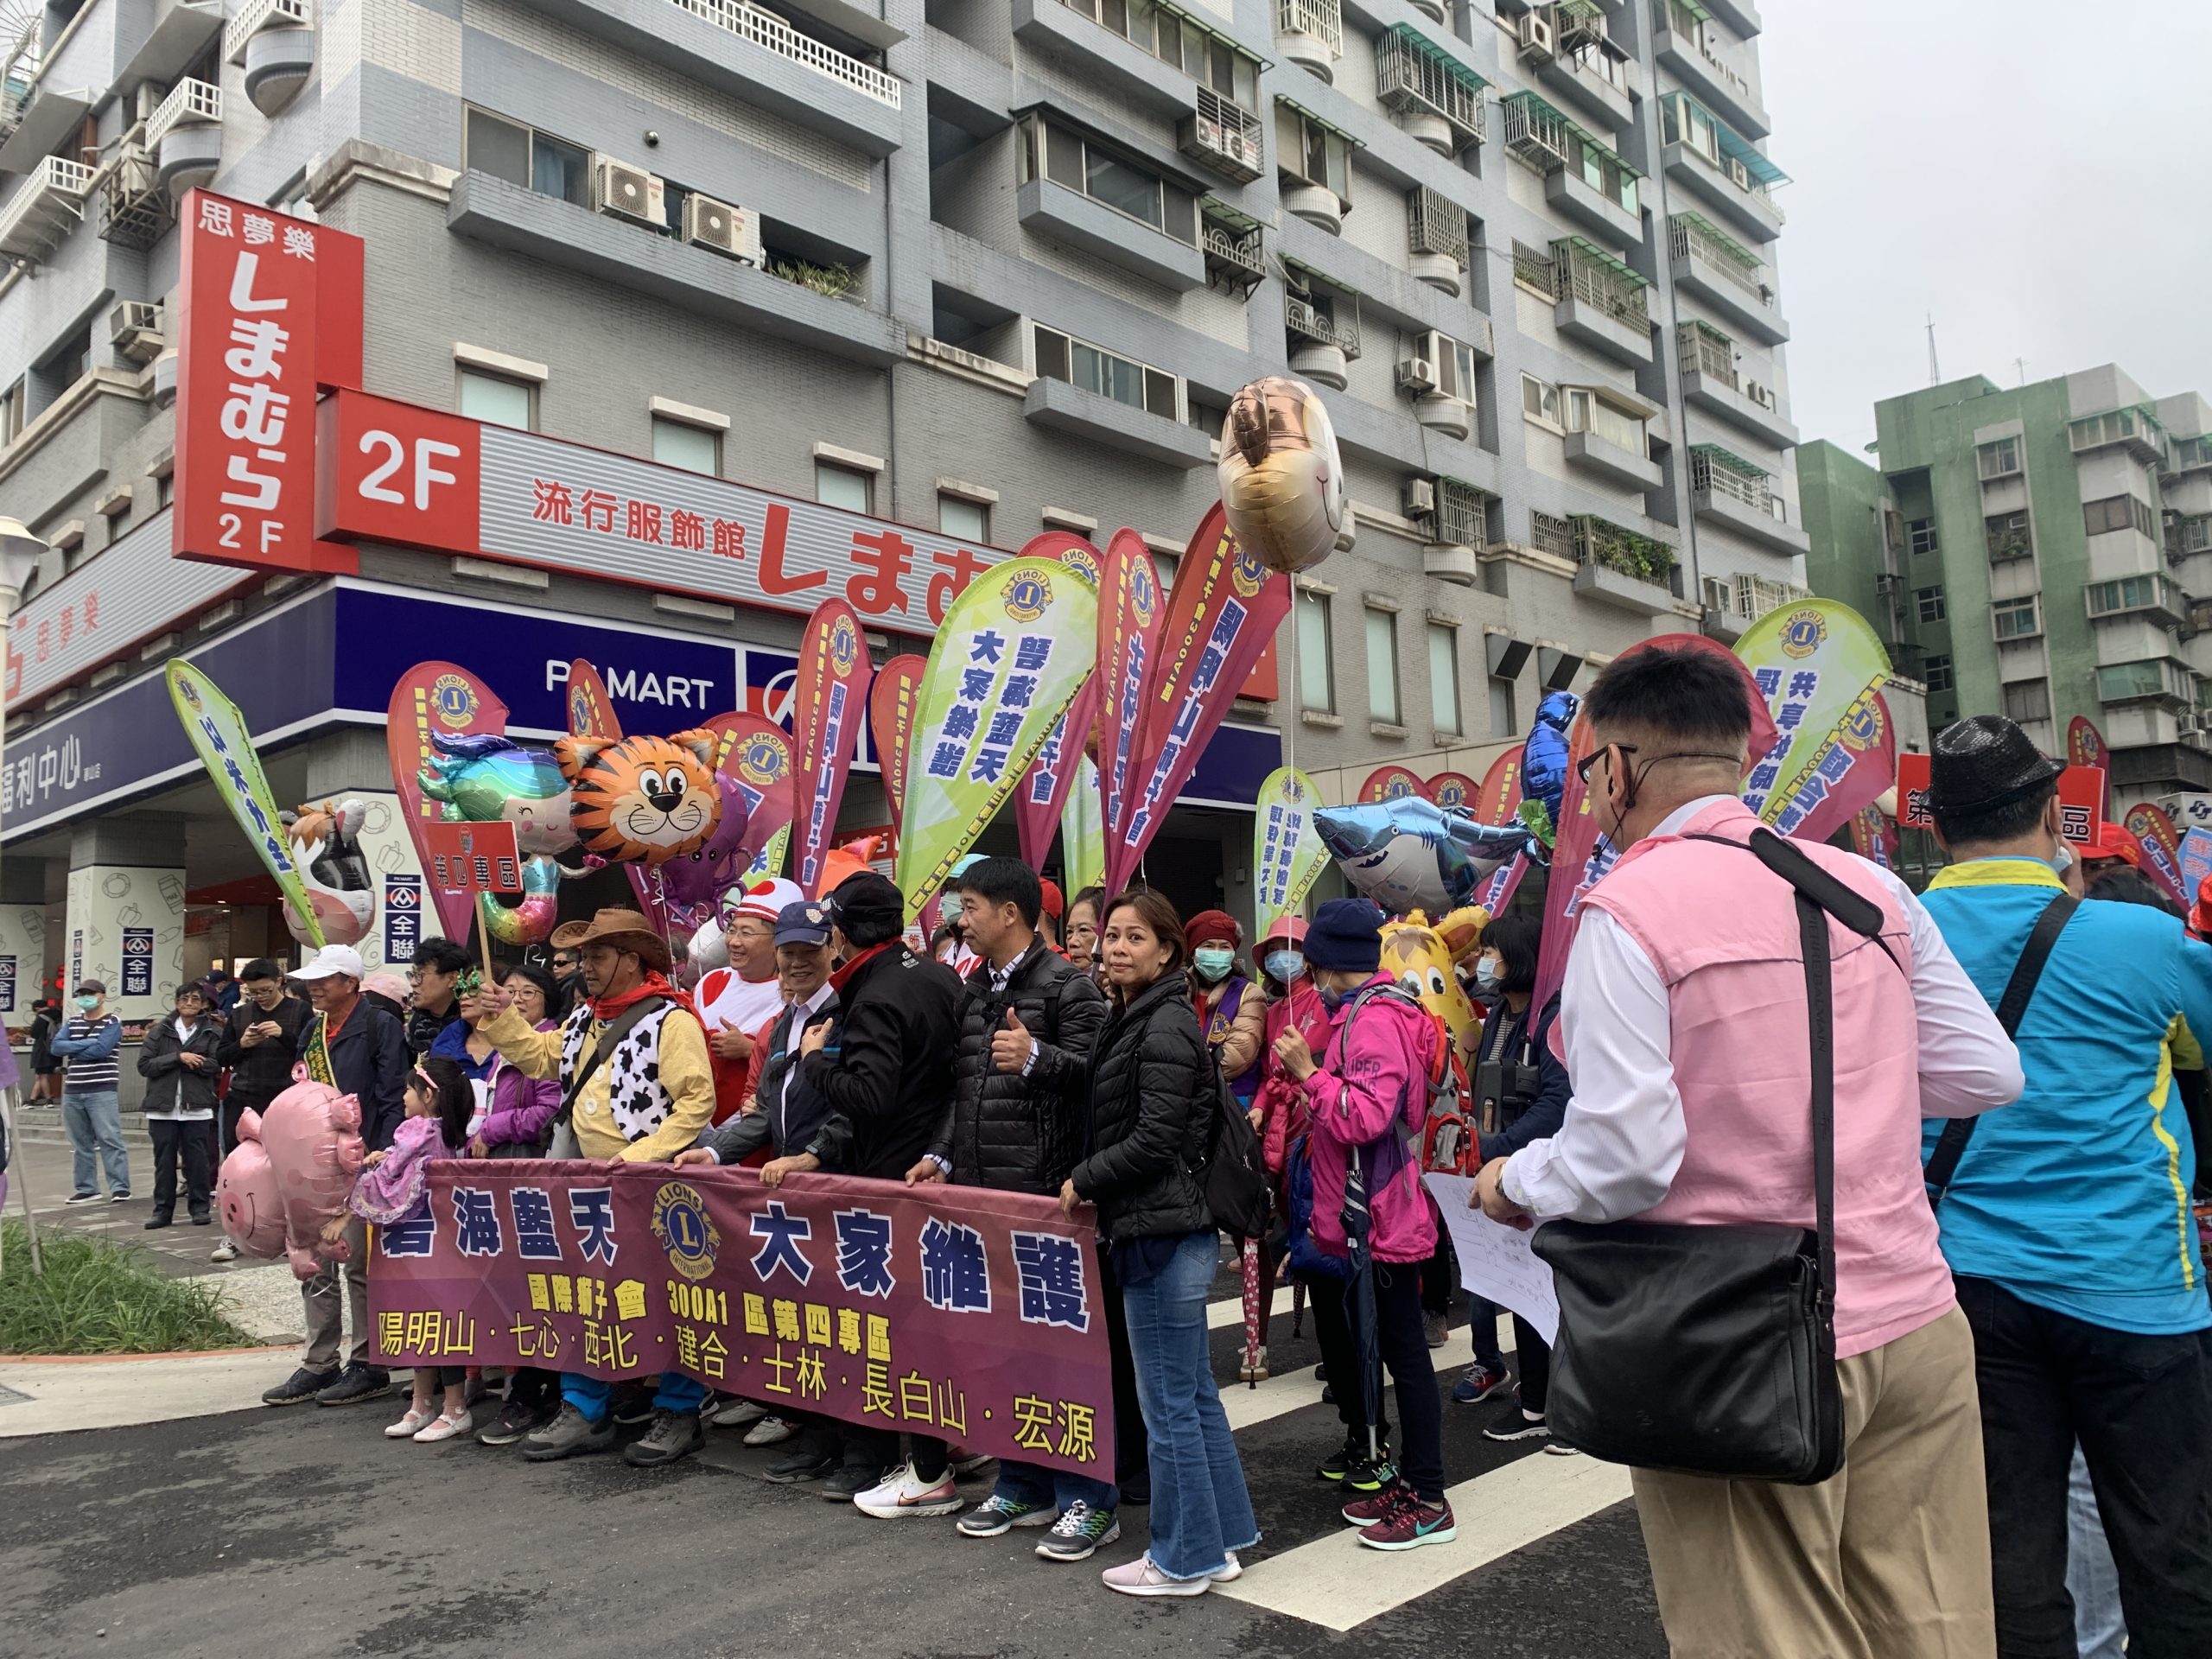 國際獅子會300A1區2020年「台灣繁榮、人民幸福、環保愛地球、創意遊行嘉年華」大遊行 宣導反毒、反霸凌、反詐騙、反酒駕、作環保